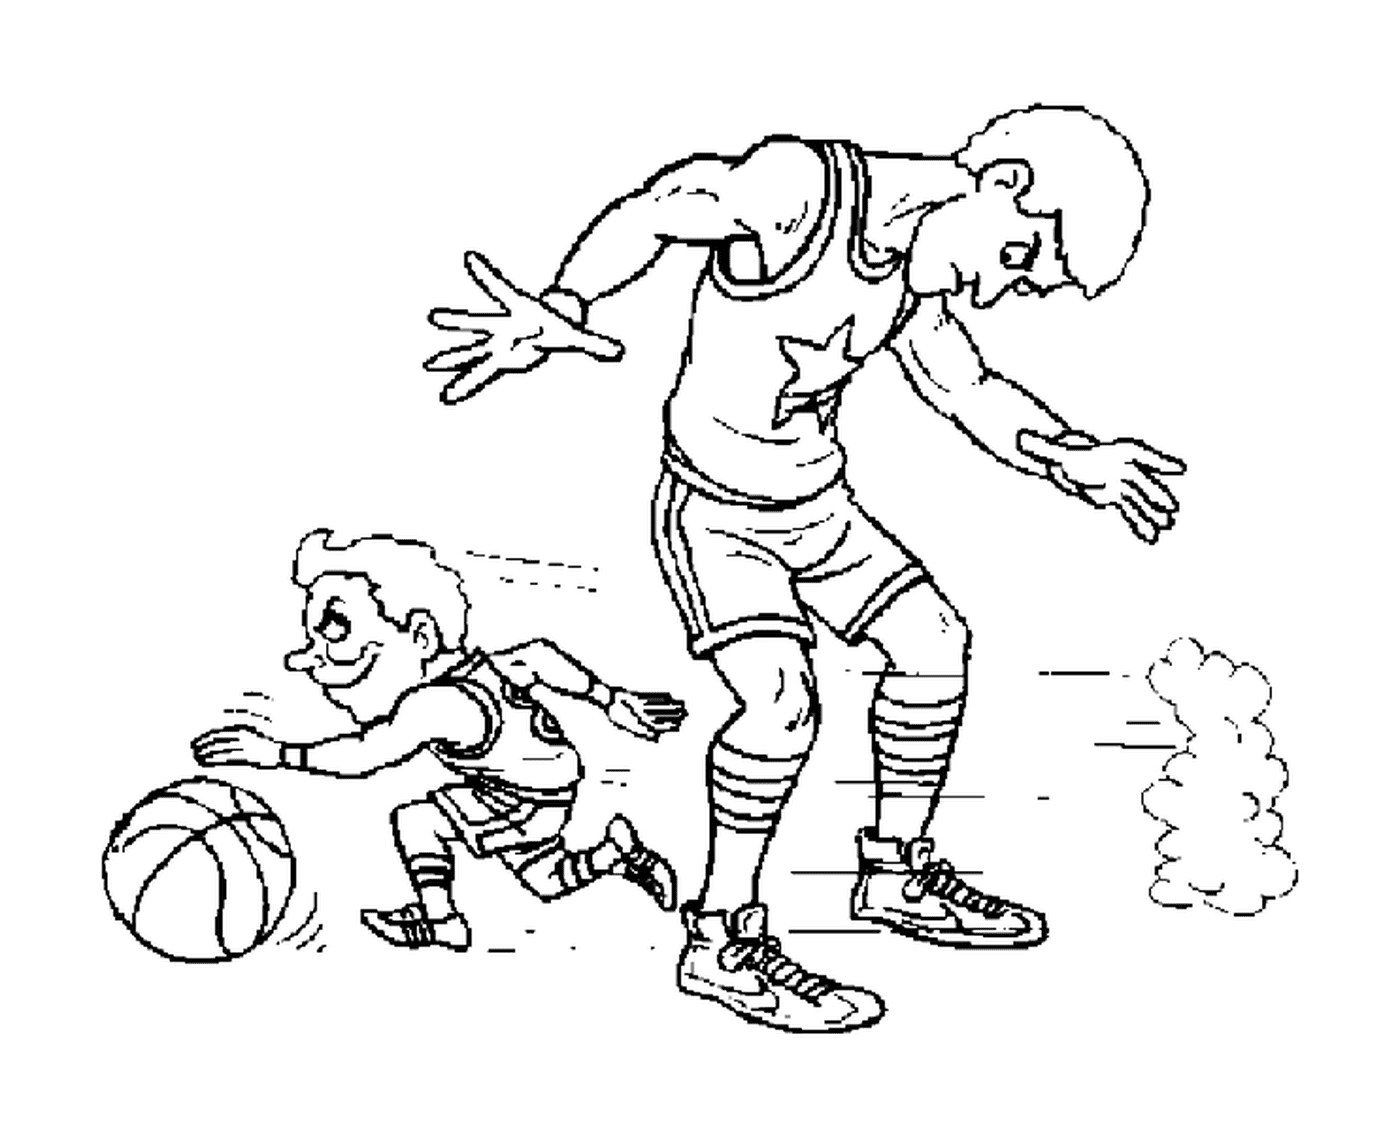  Un pequeño jugador pasa bajo las piernas de otro jugador 